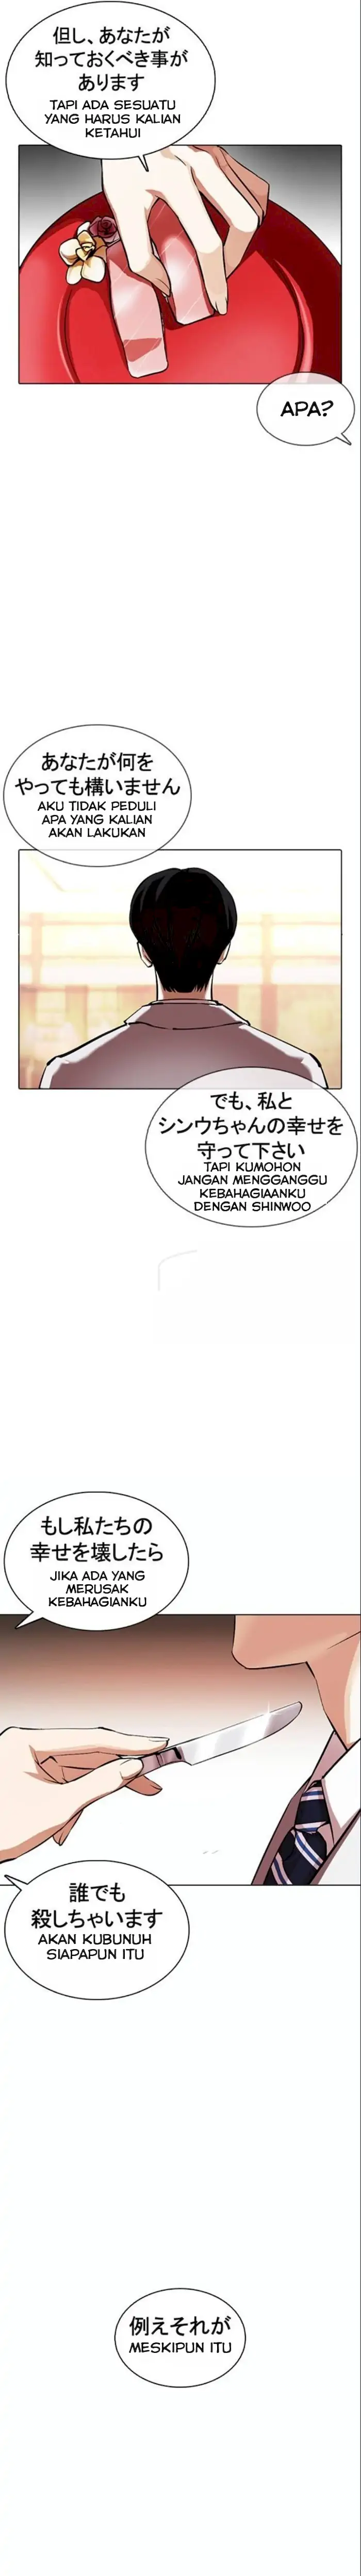 Gaiken Jijou Shugi (Lookism) Chapter 375 - 217